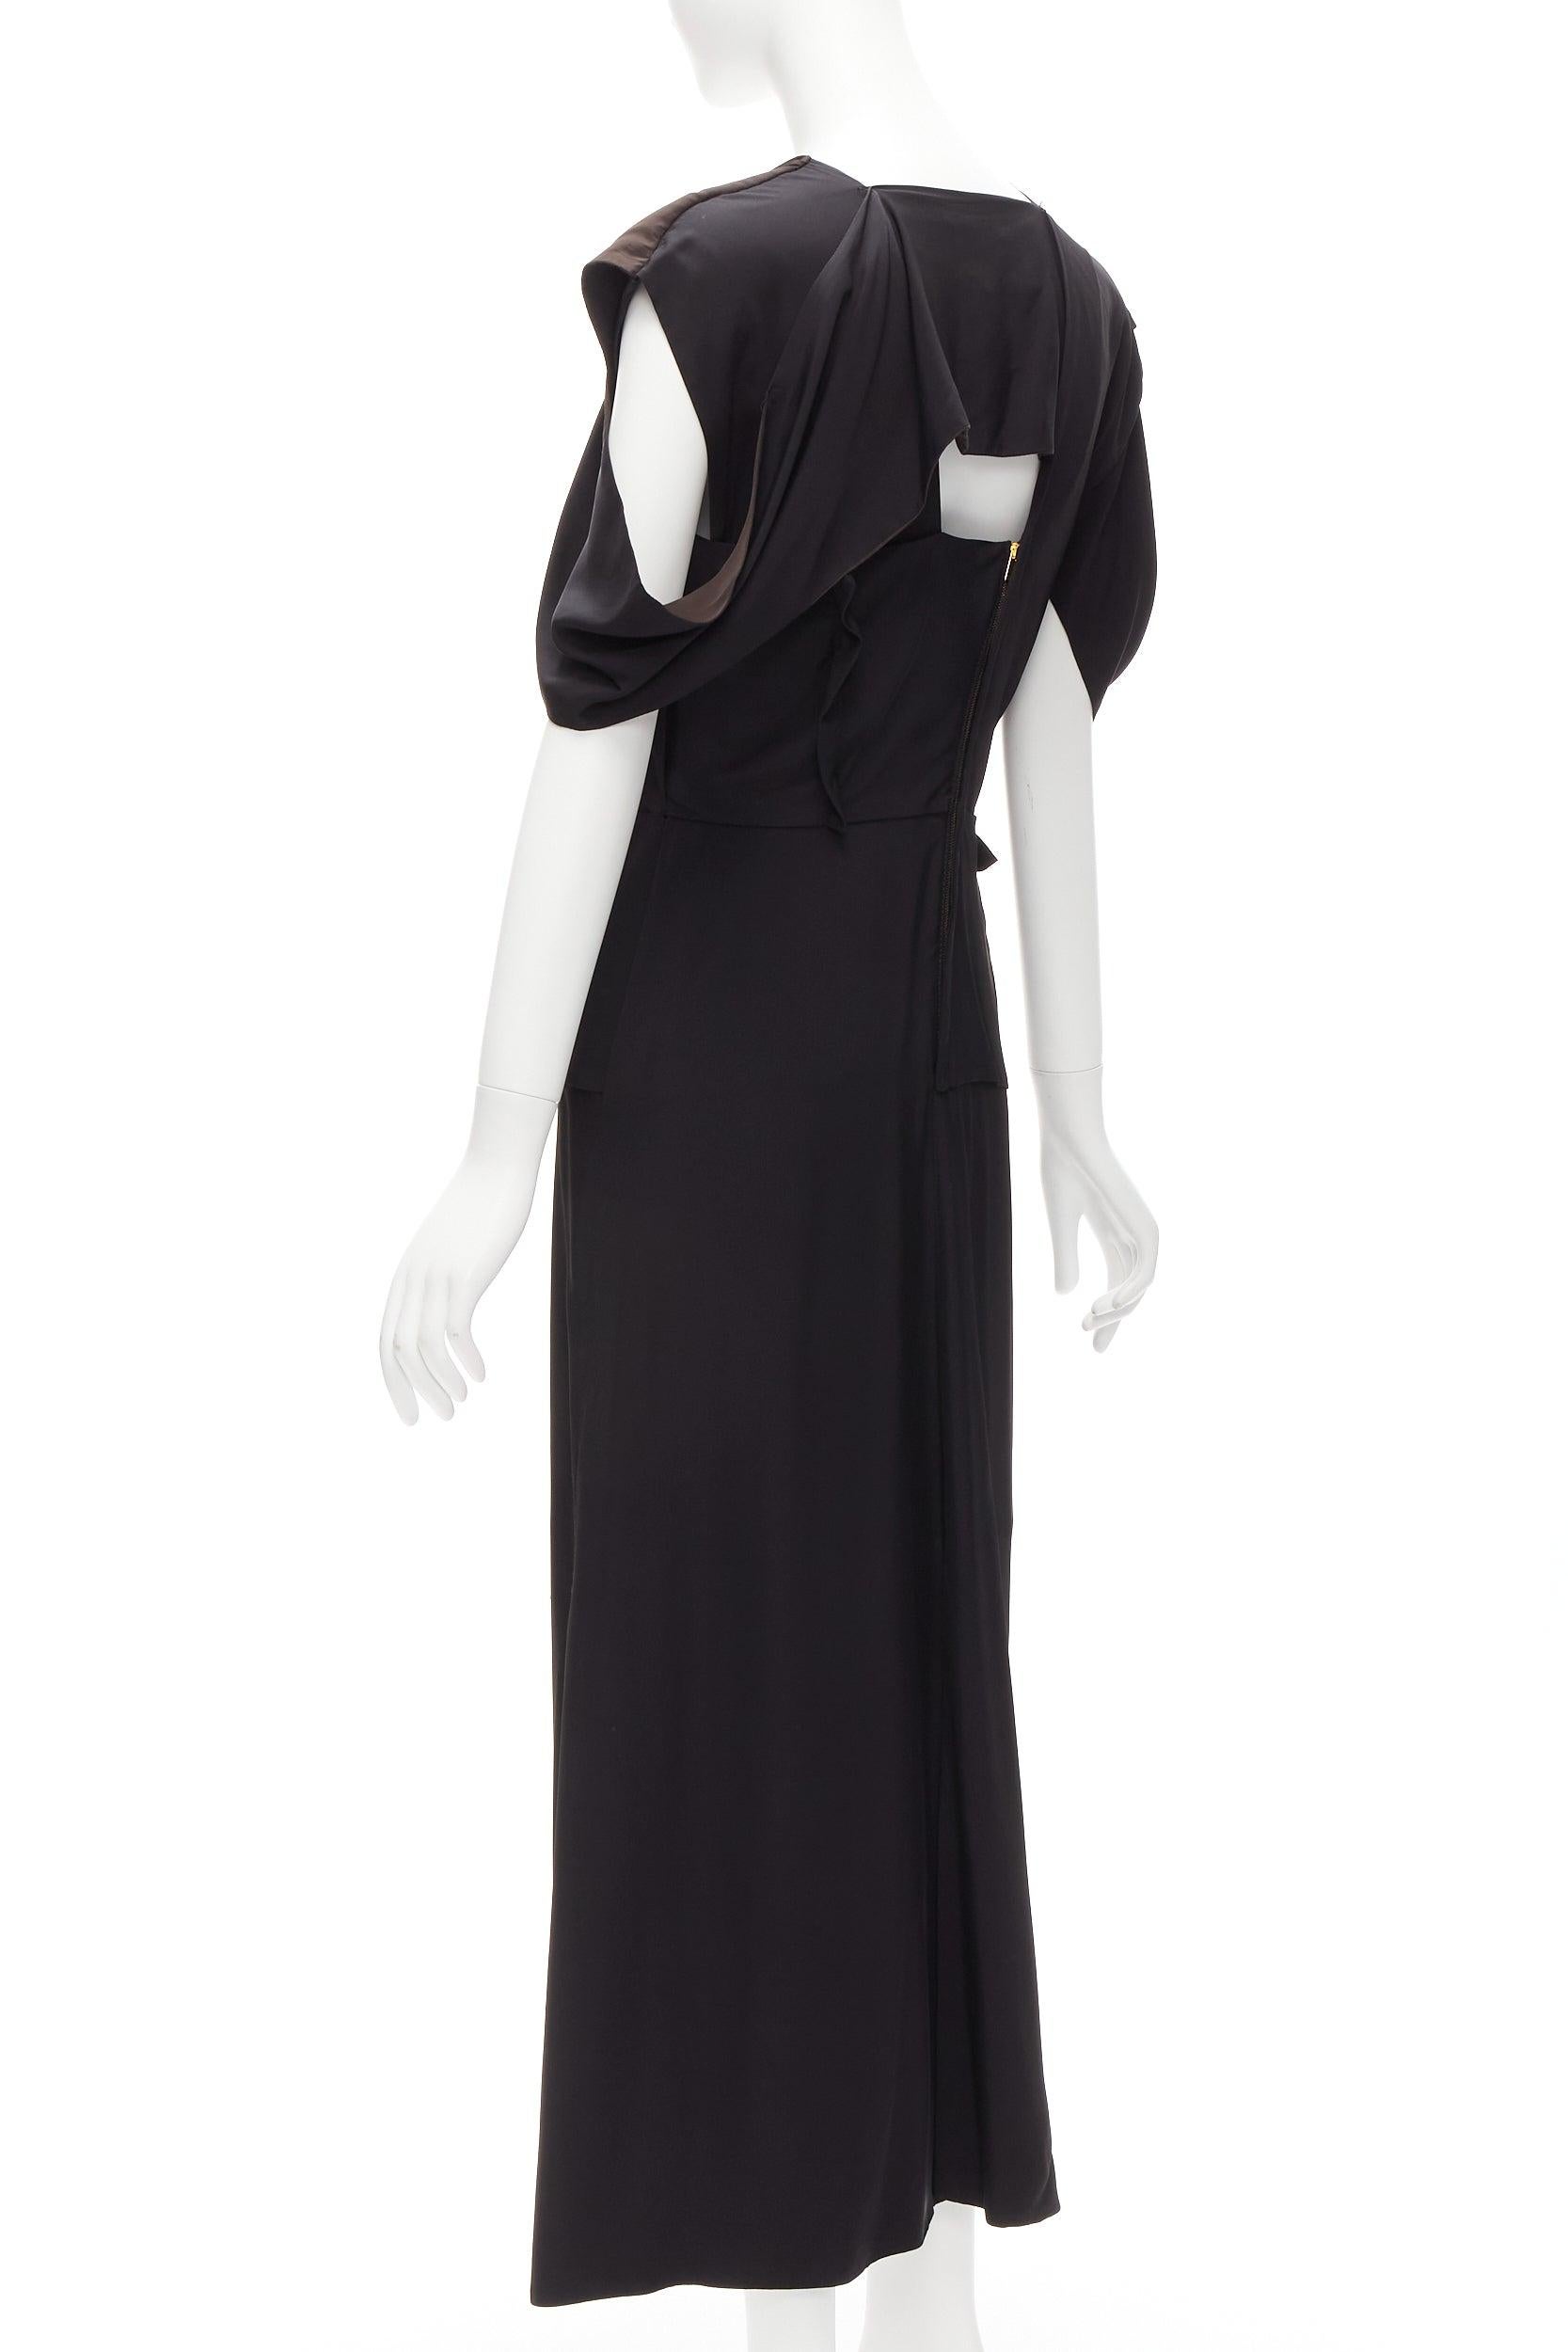 BOTTEGA VENETA 2020 black intrecciato woven square neck layered dress IT38 XS For Sale 1